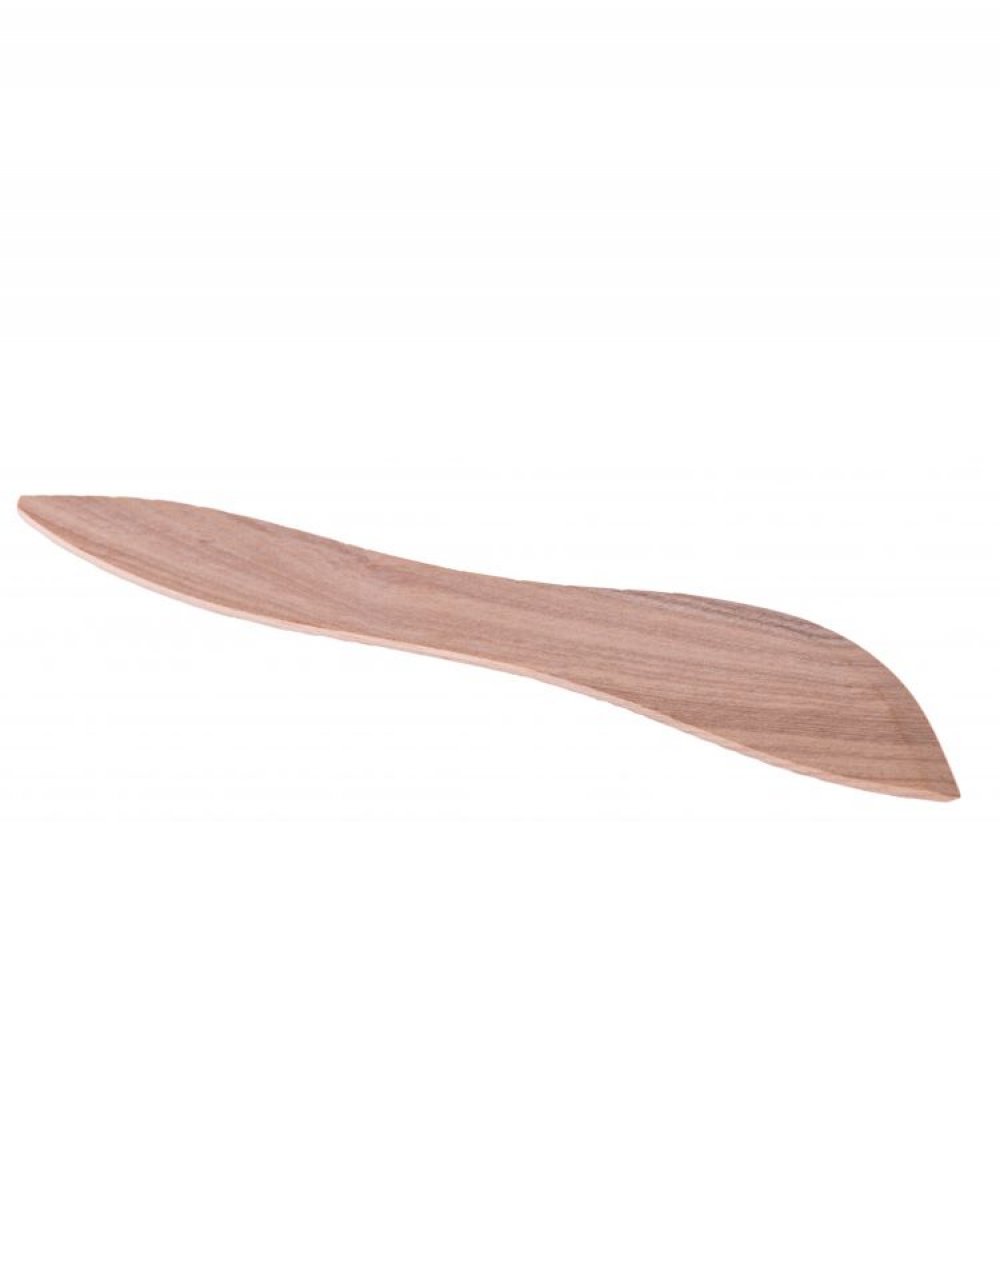 Dřevěný kuchyňský nůž k roztírání másla 18x3 cm